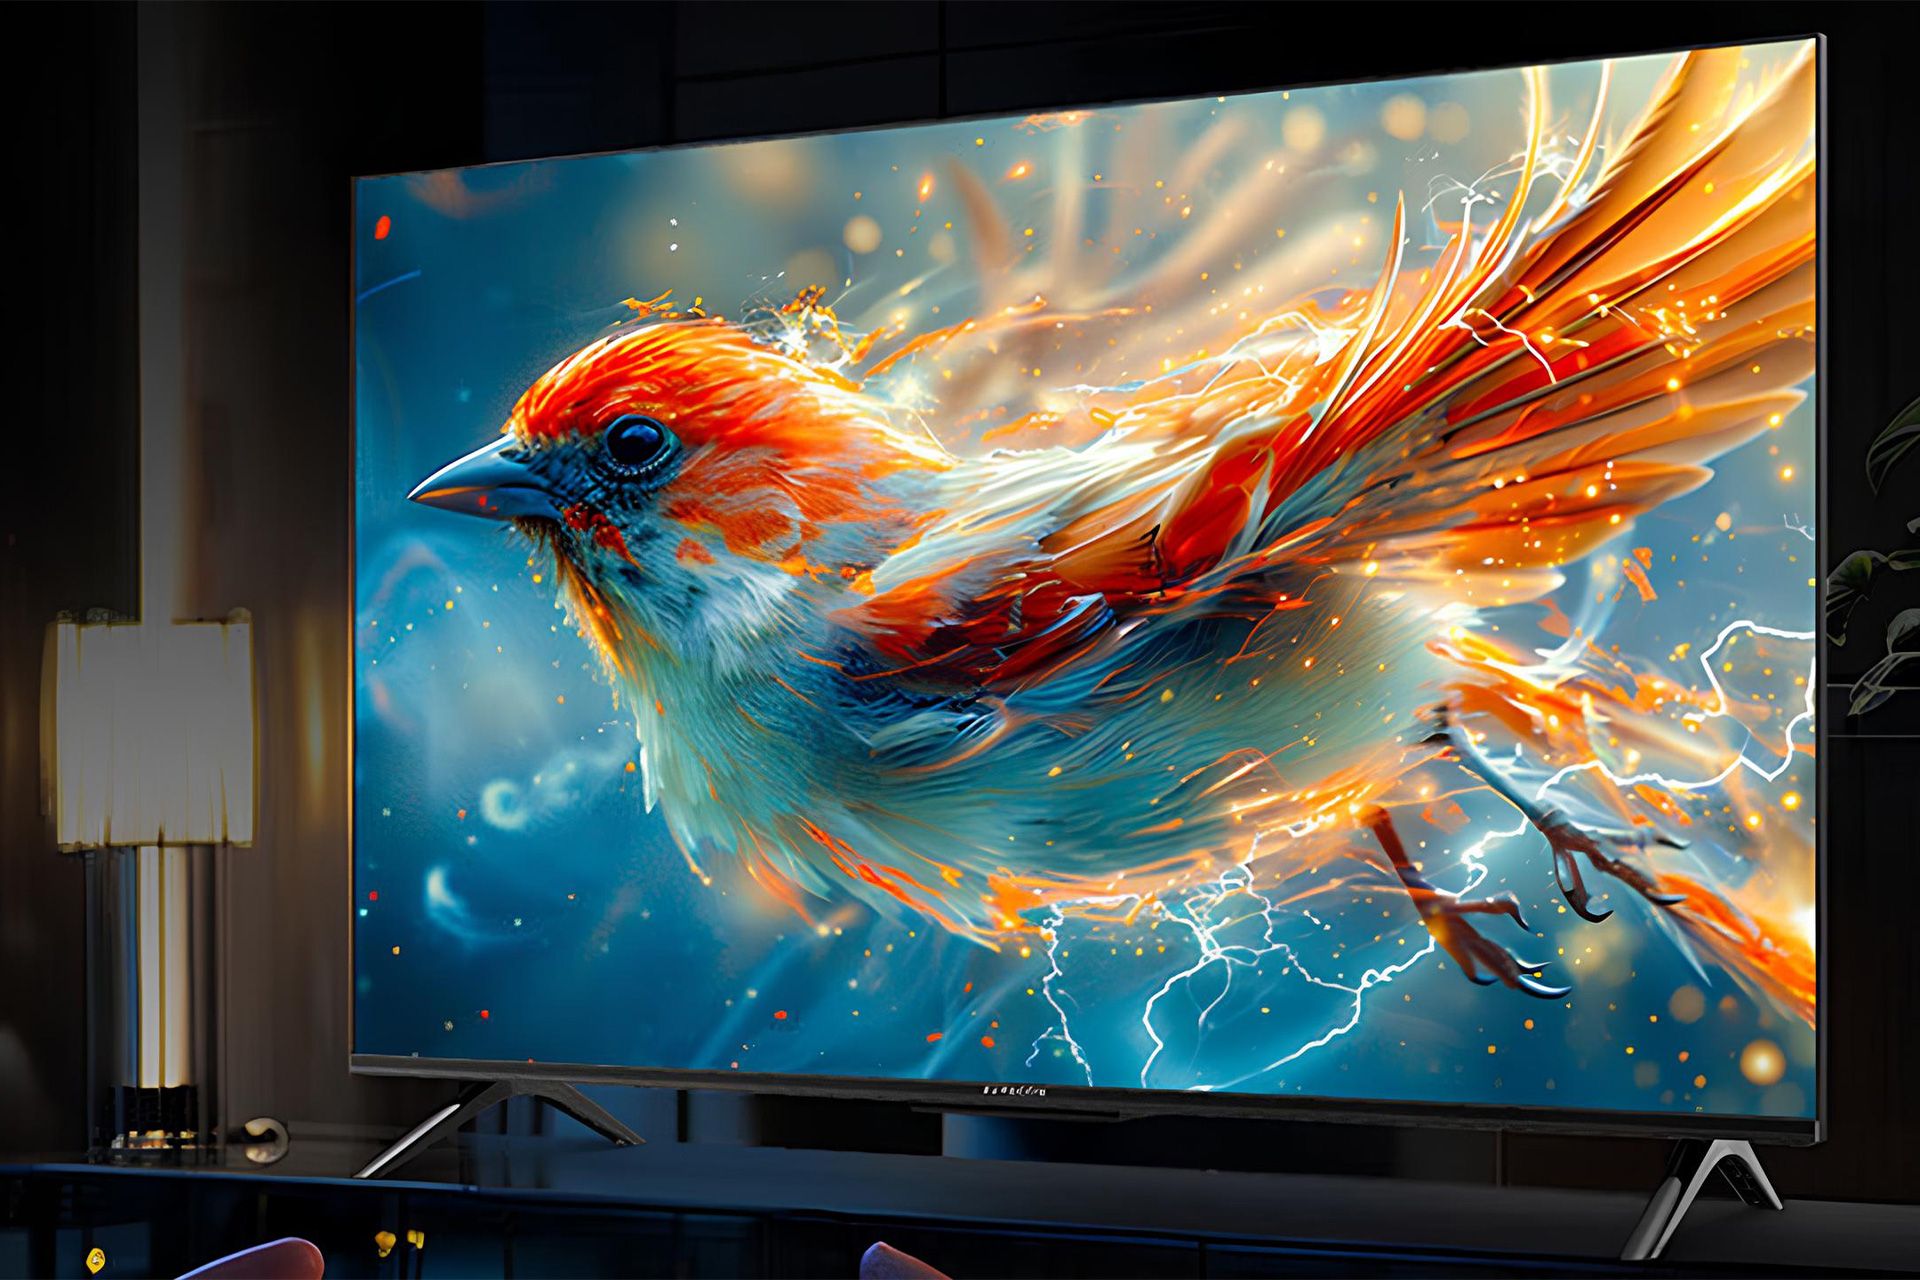 تلویزیون هوشمند TCL Thunderbird Sparrow 5 SEدرحال نمایش یک پرنده